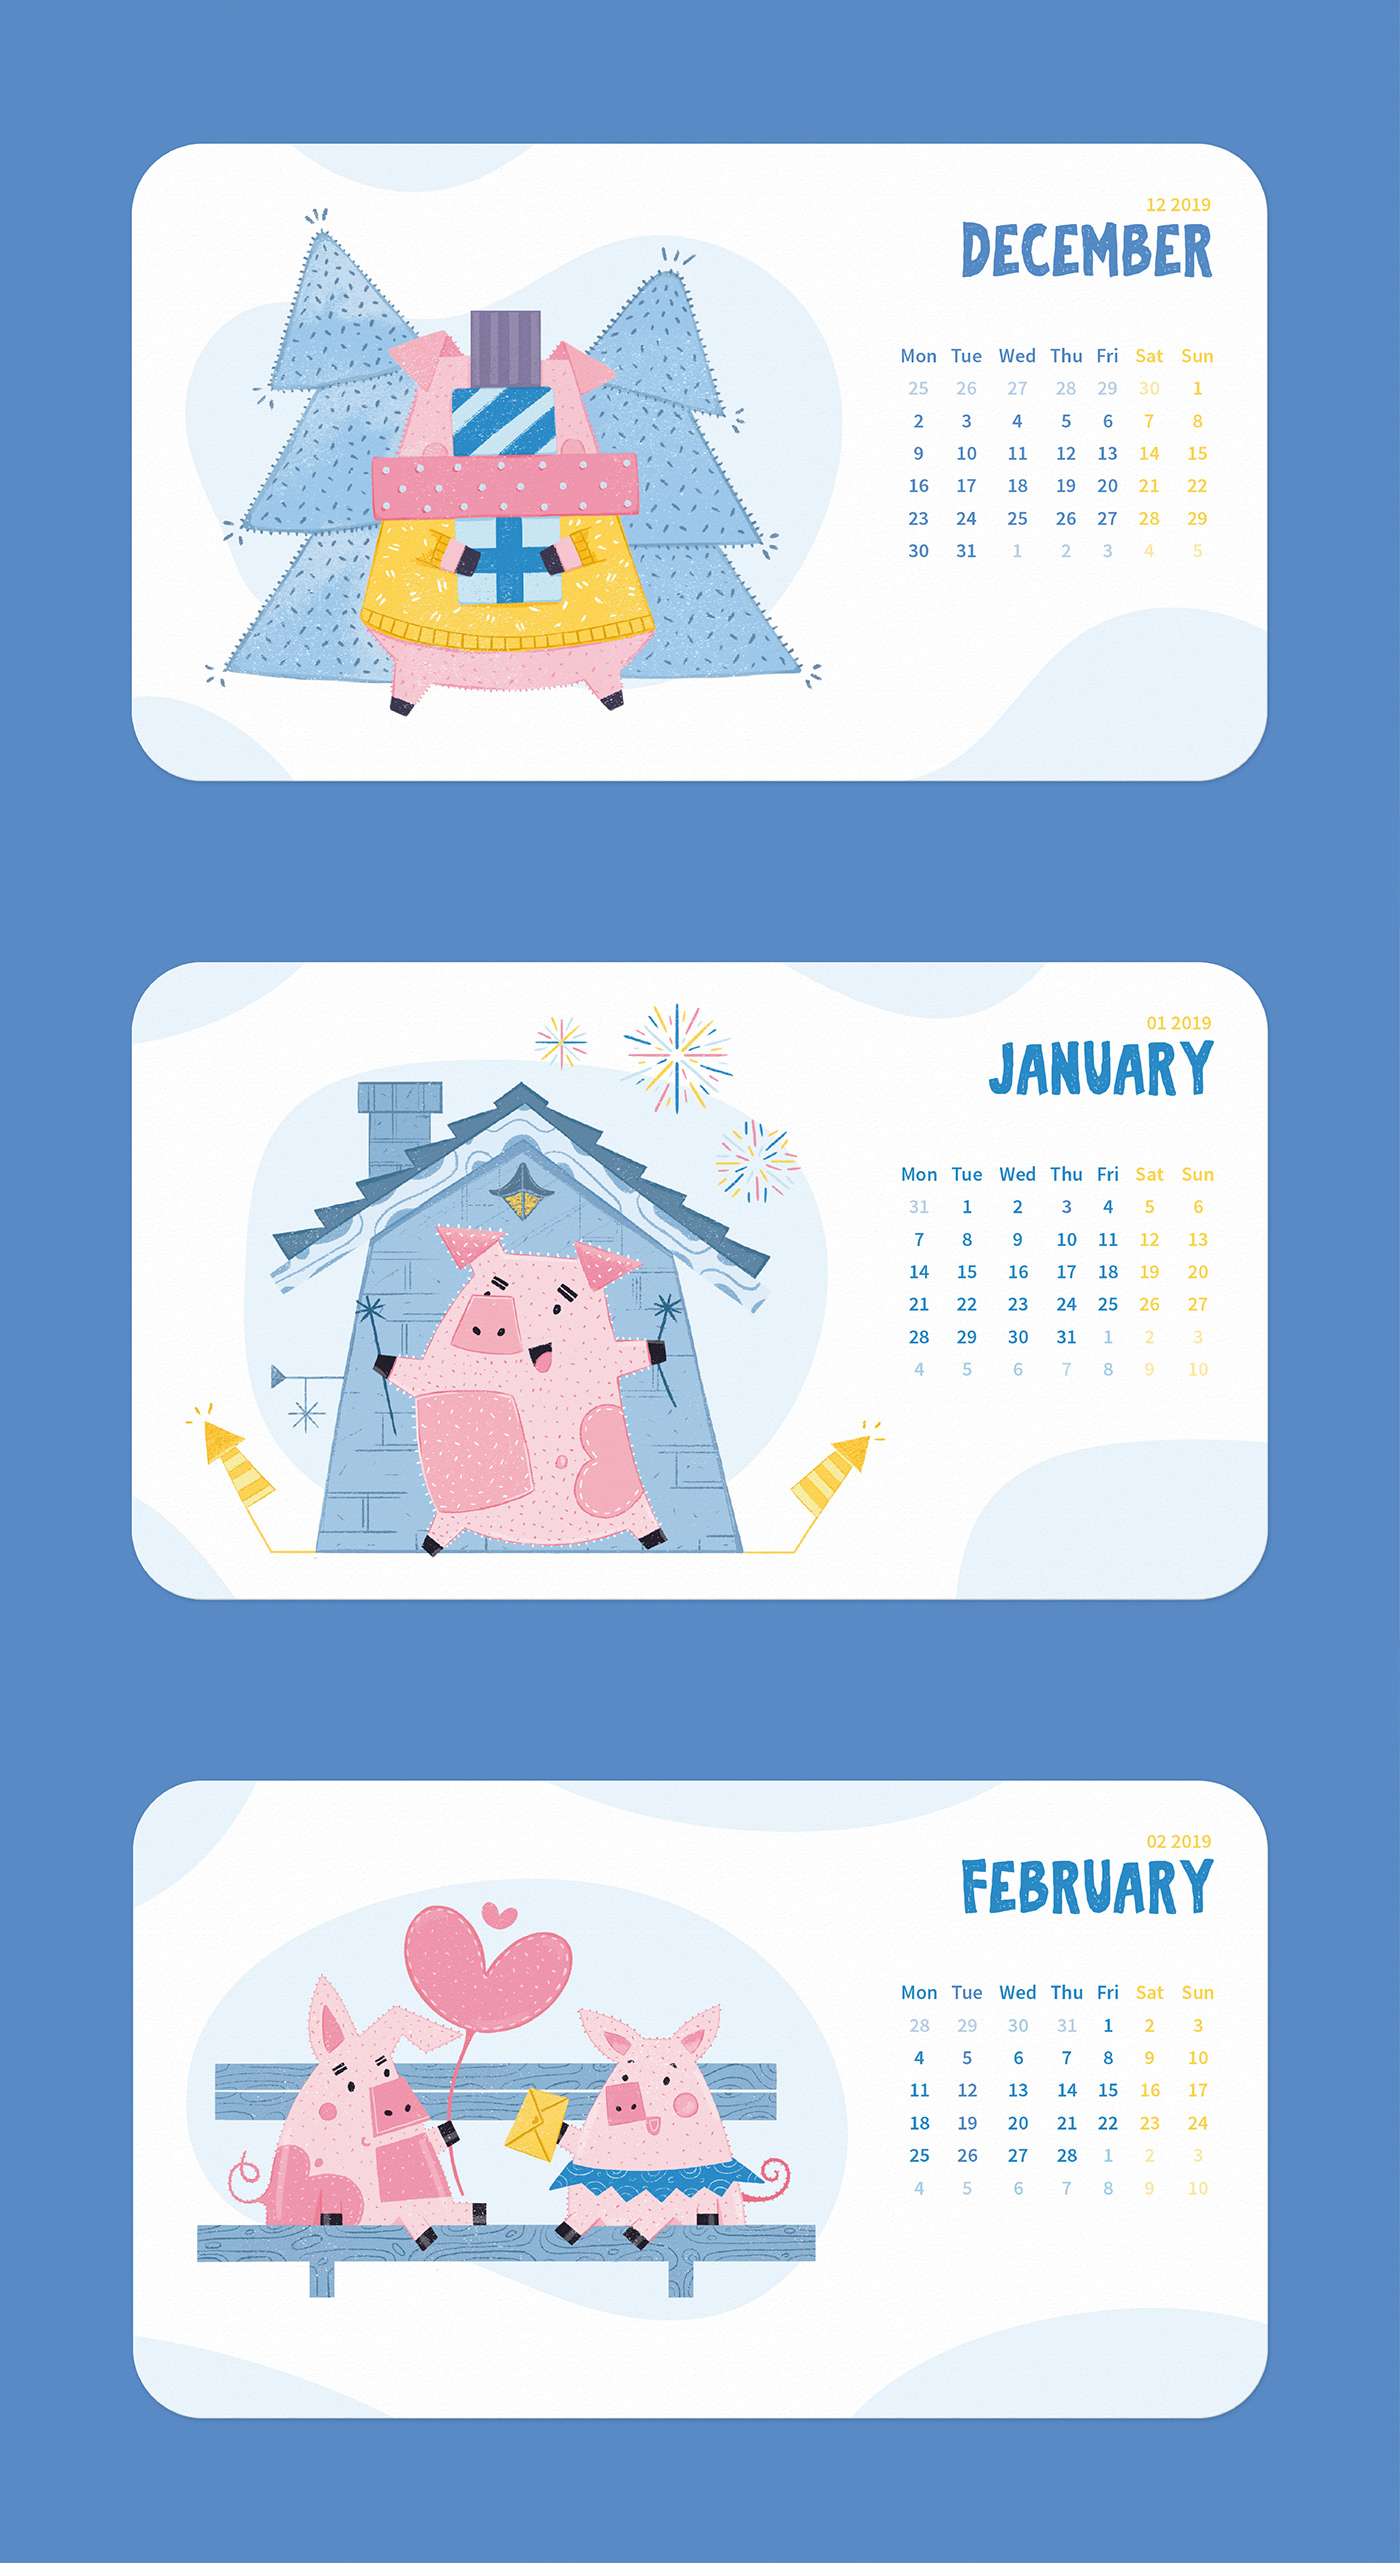 calendar new year calendar 2019 product design  pig art ILLUSTRATION  desk calendar pig year